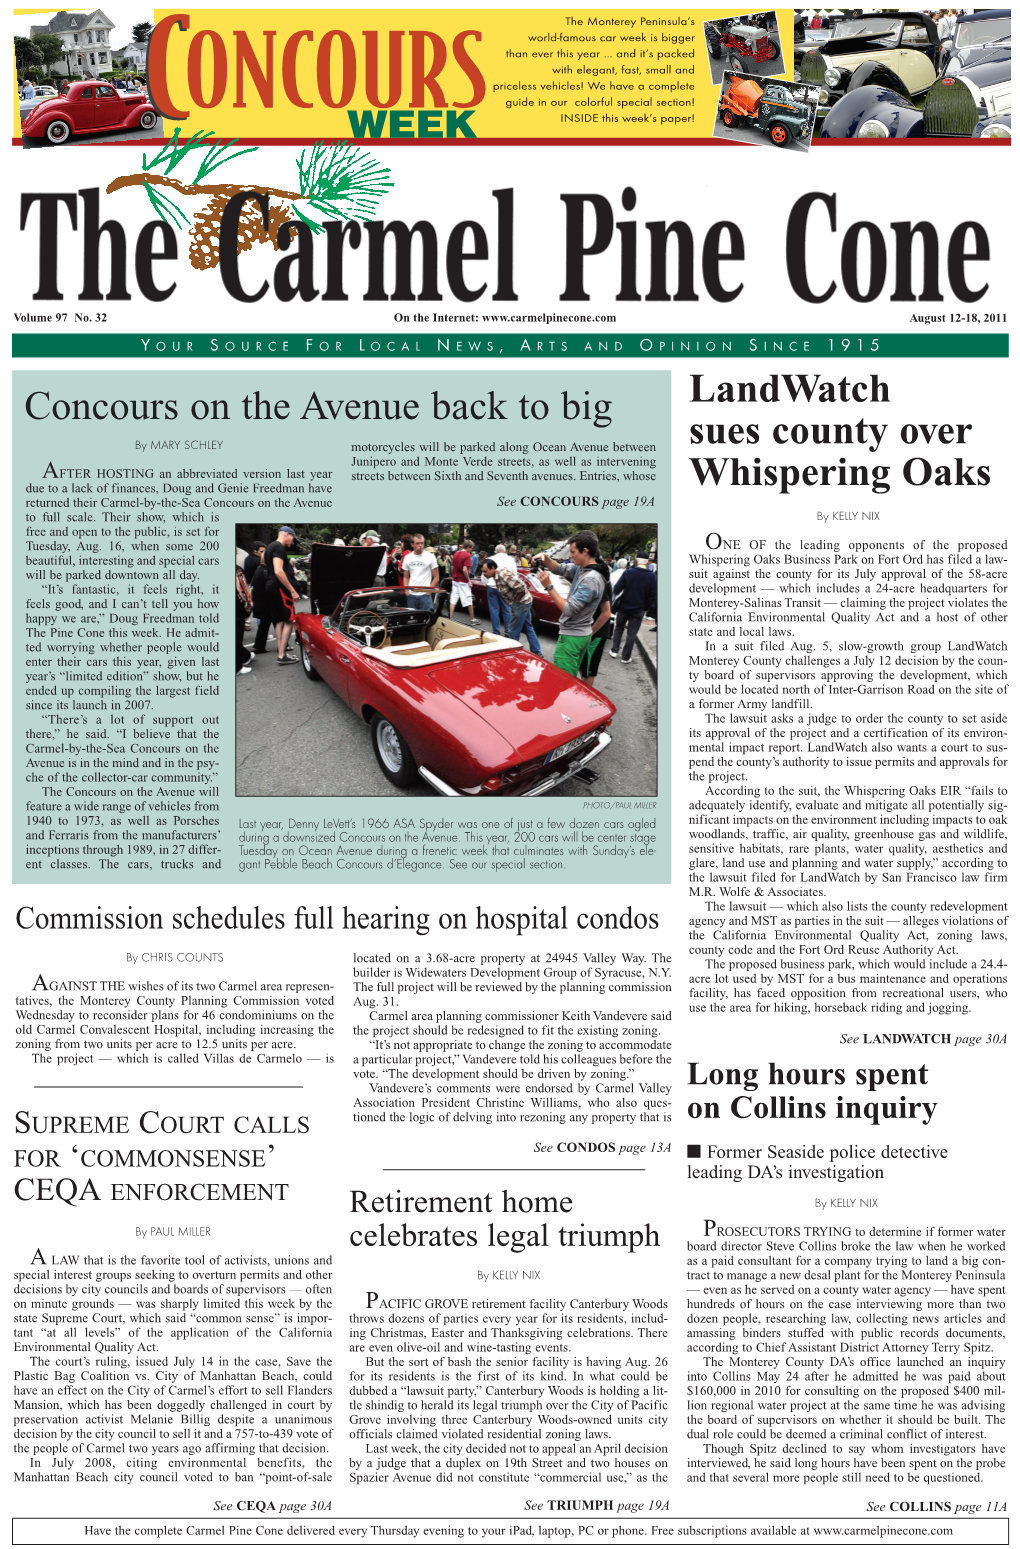 Carmel Pine Cone, August 12, 2011 (Main News)